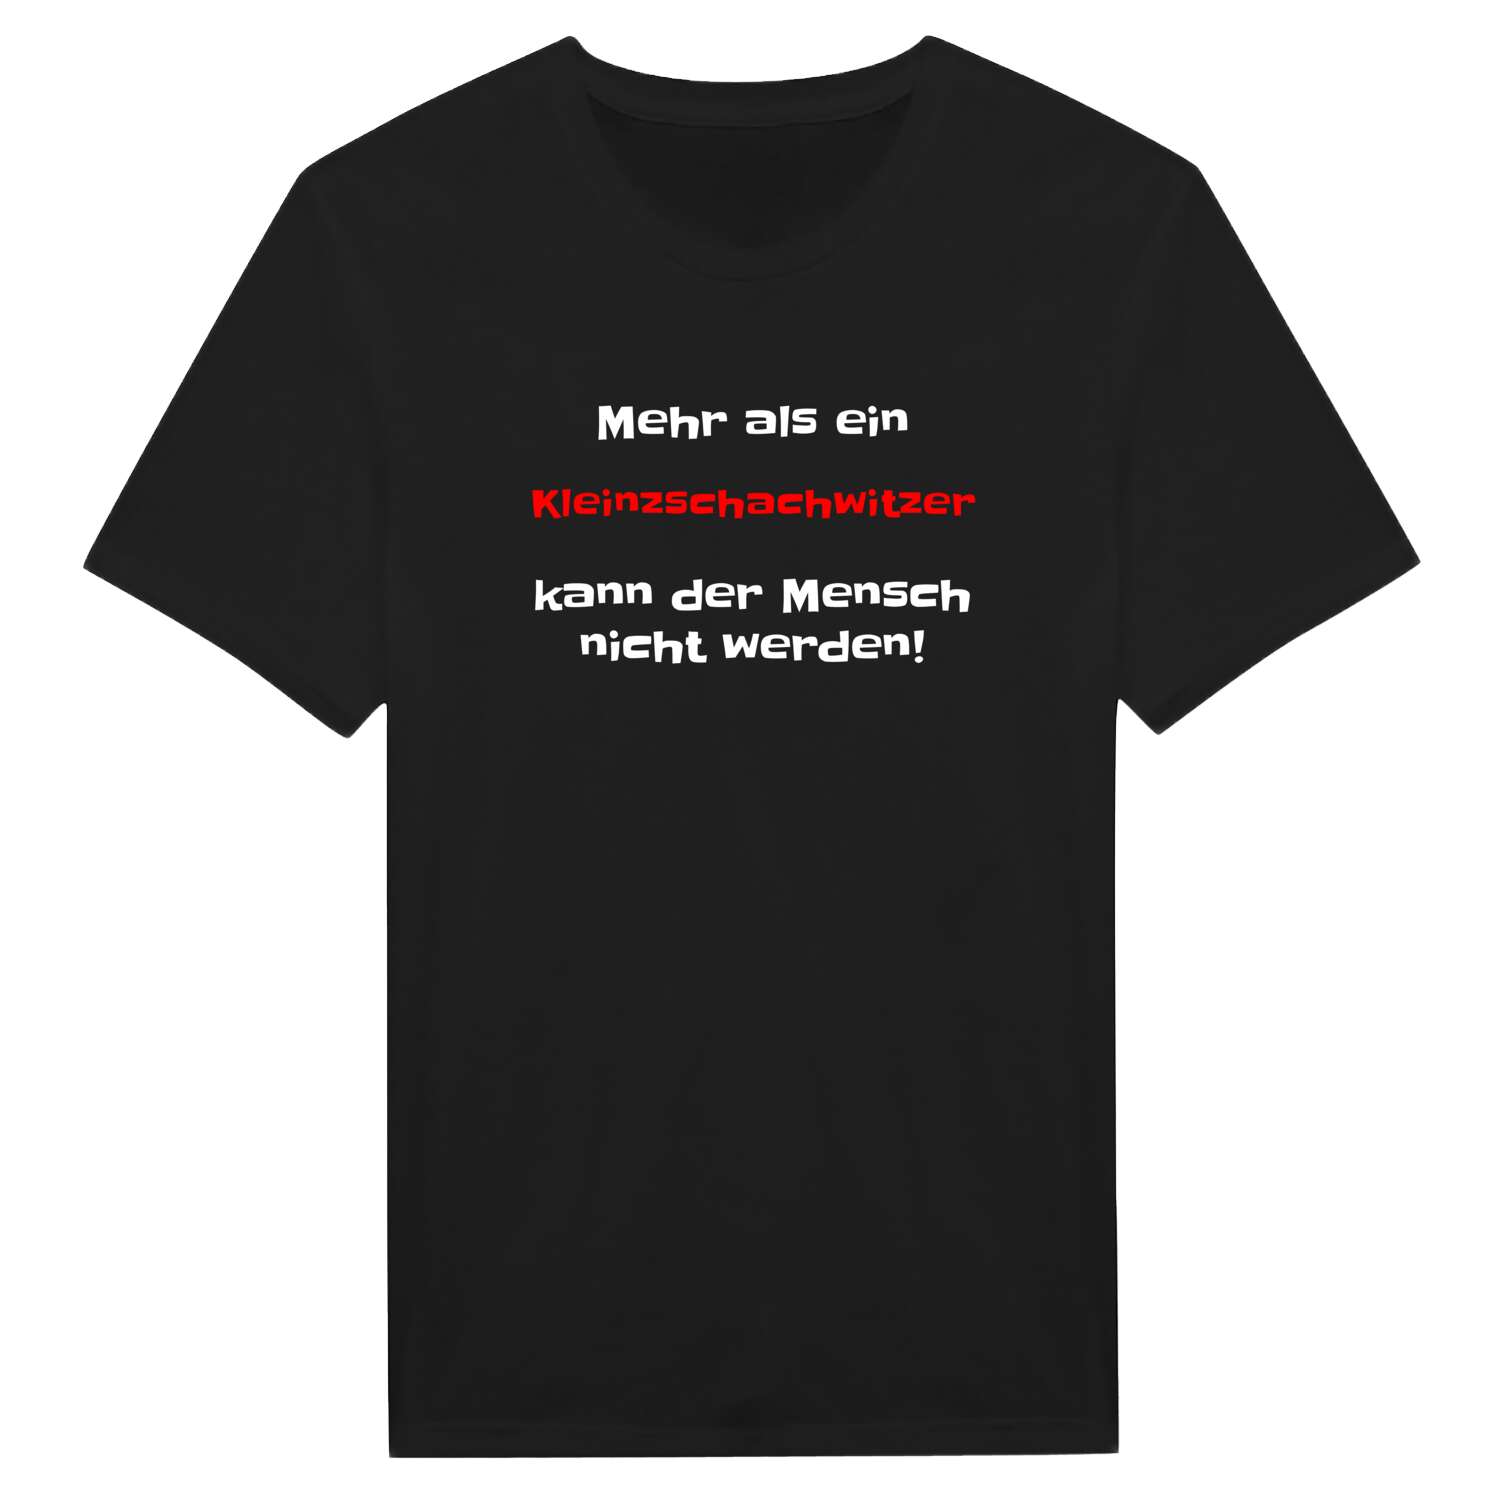 Kleinzschachwitz T-Shirt »Mehr als ein«